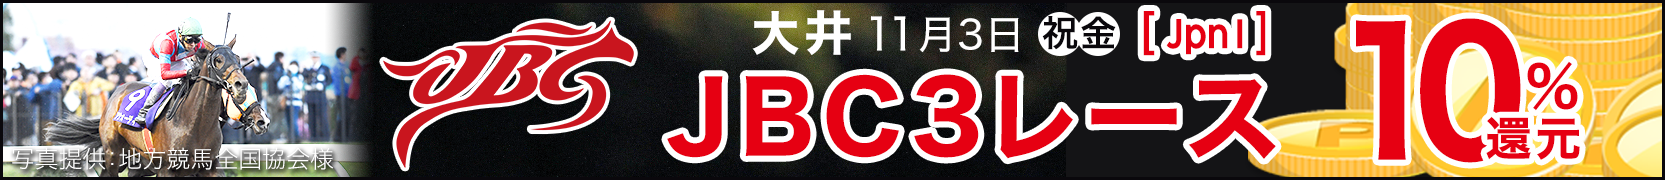 ダートグレード競走キャンペーン JBC(JpnI)